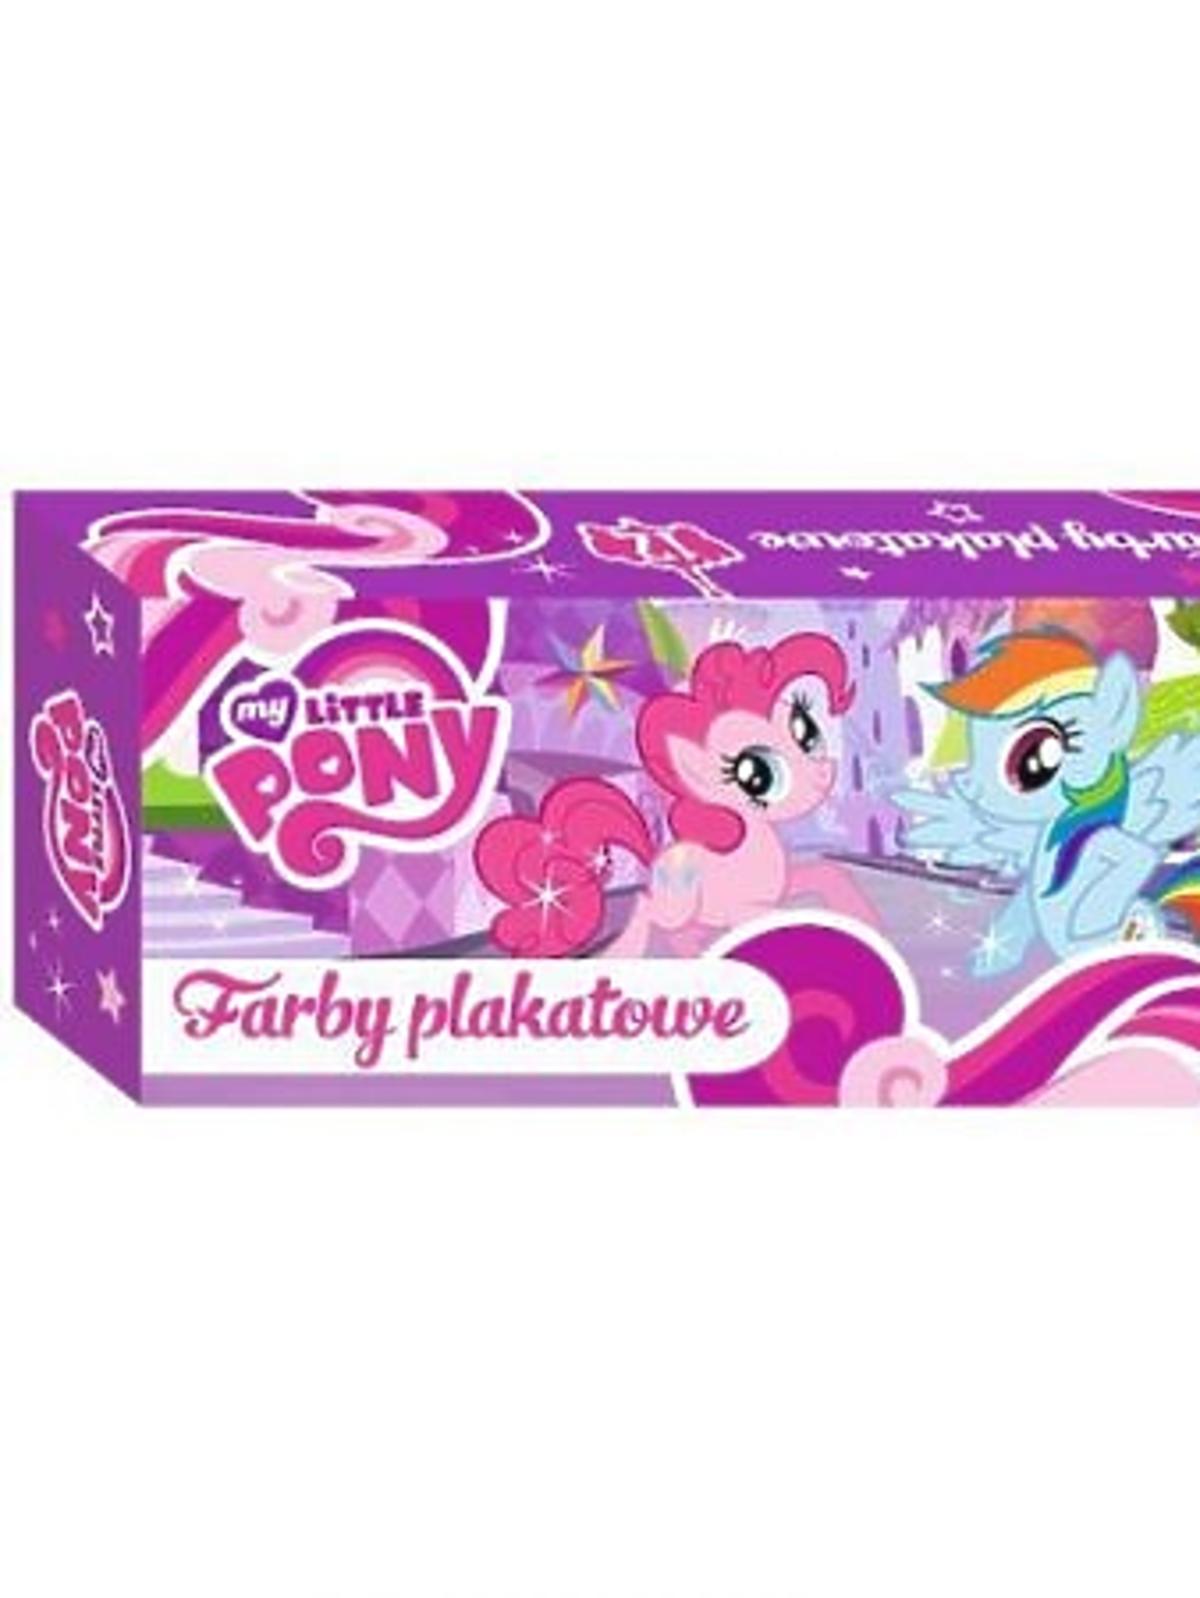 Farby plakatowe 12 kolorów 20 ml My Little Pony 12.87zł taniksiazka.pl.jpg